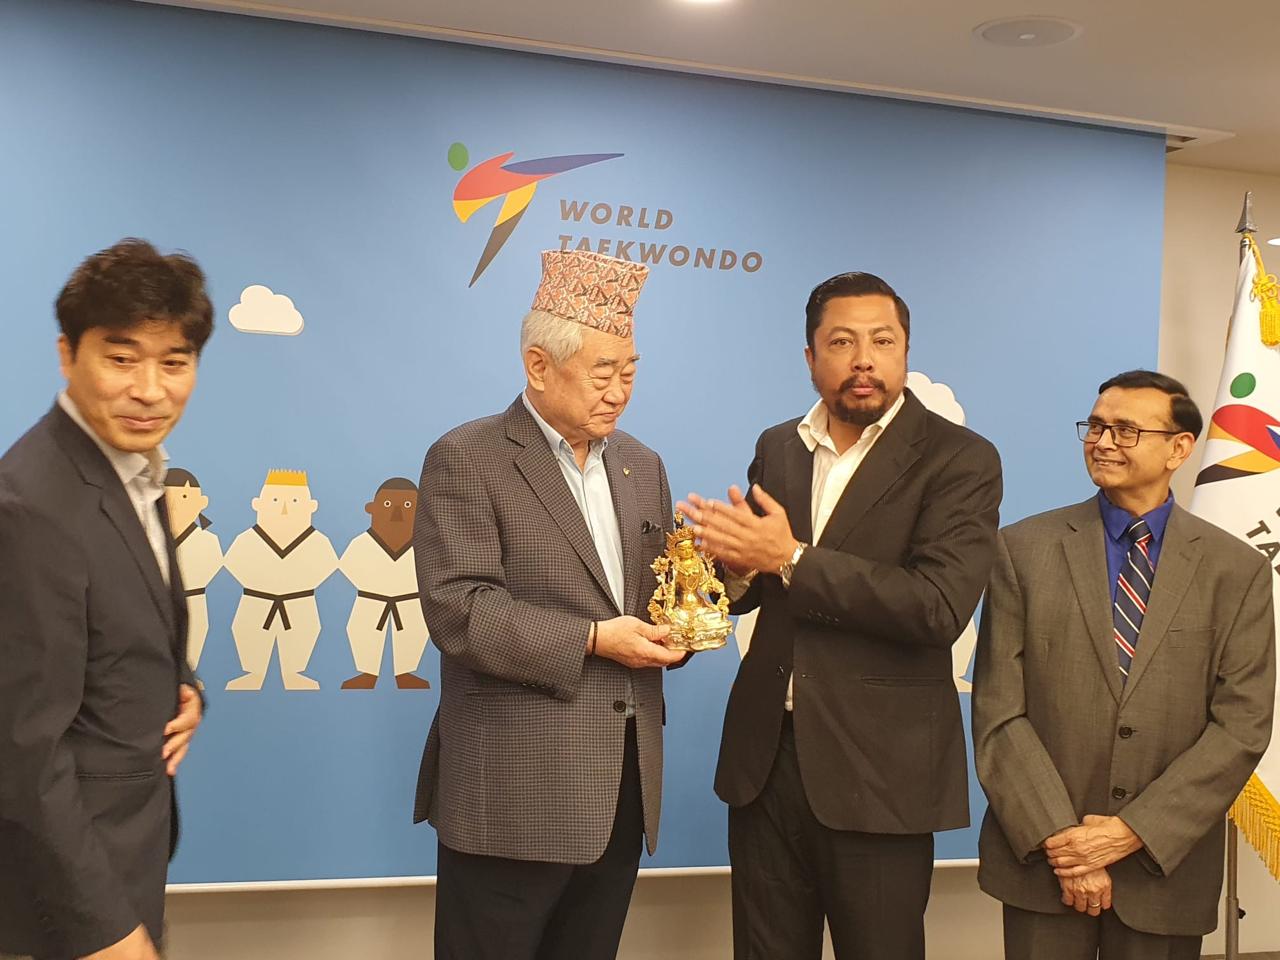 माननीय विराज भक्त श्रेष्ठज्यूकाे World Taekwondo का अध्यक्ष Dr.Chungwon Choue सँगको औपचारिक भेट